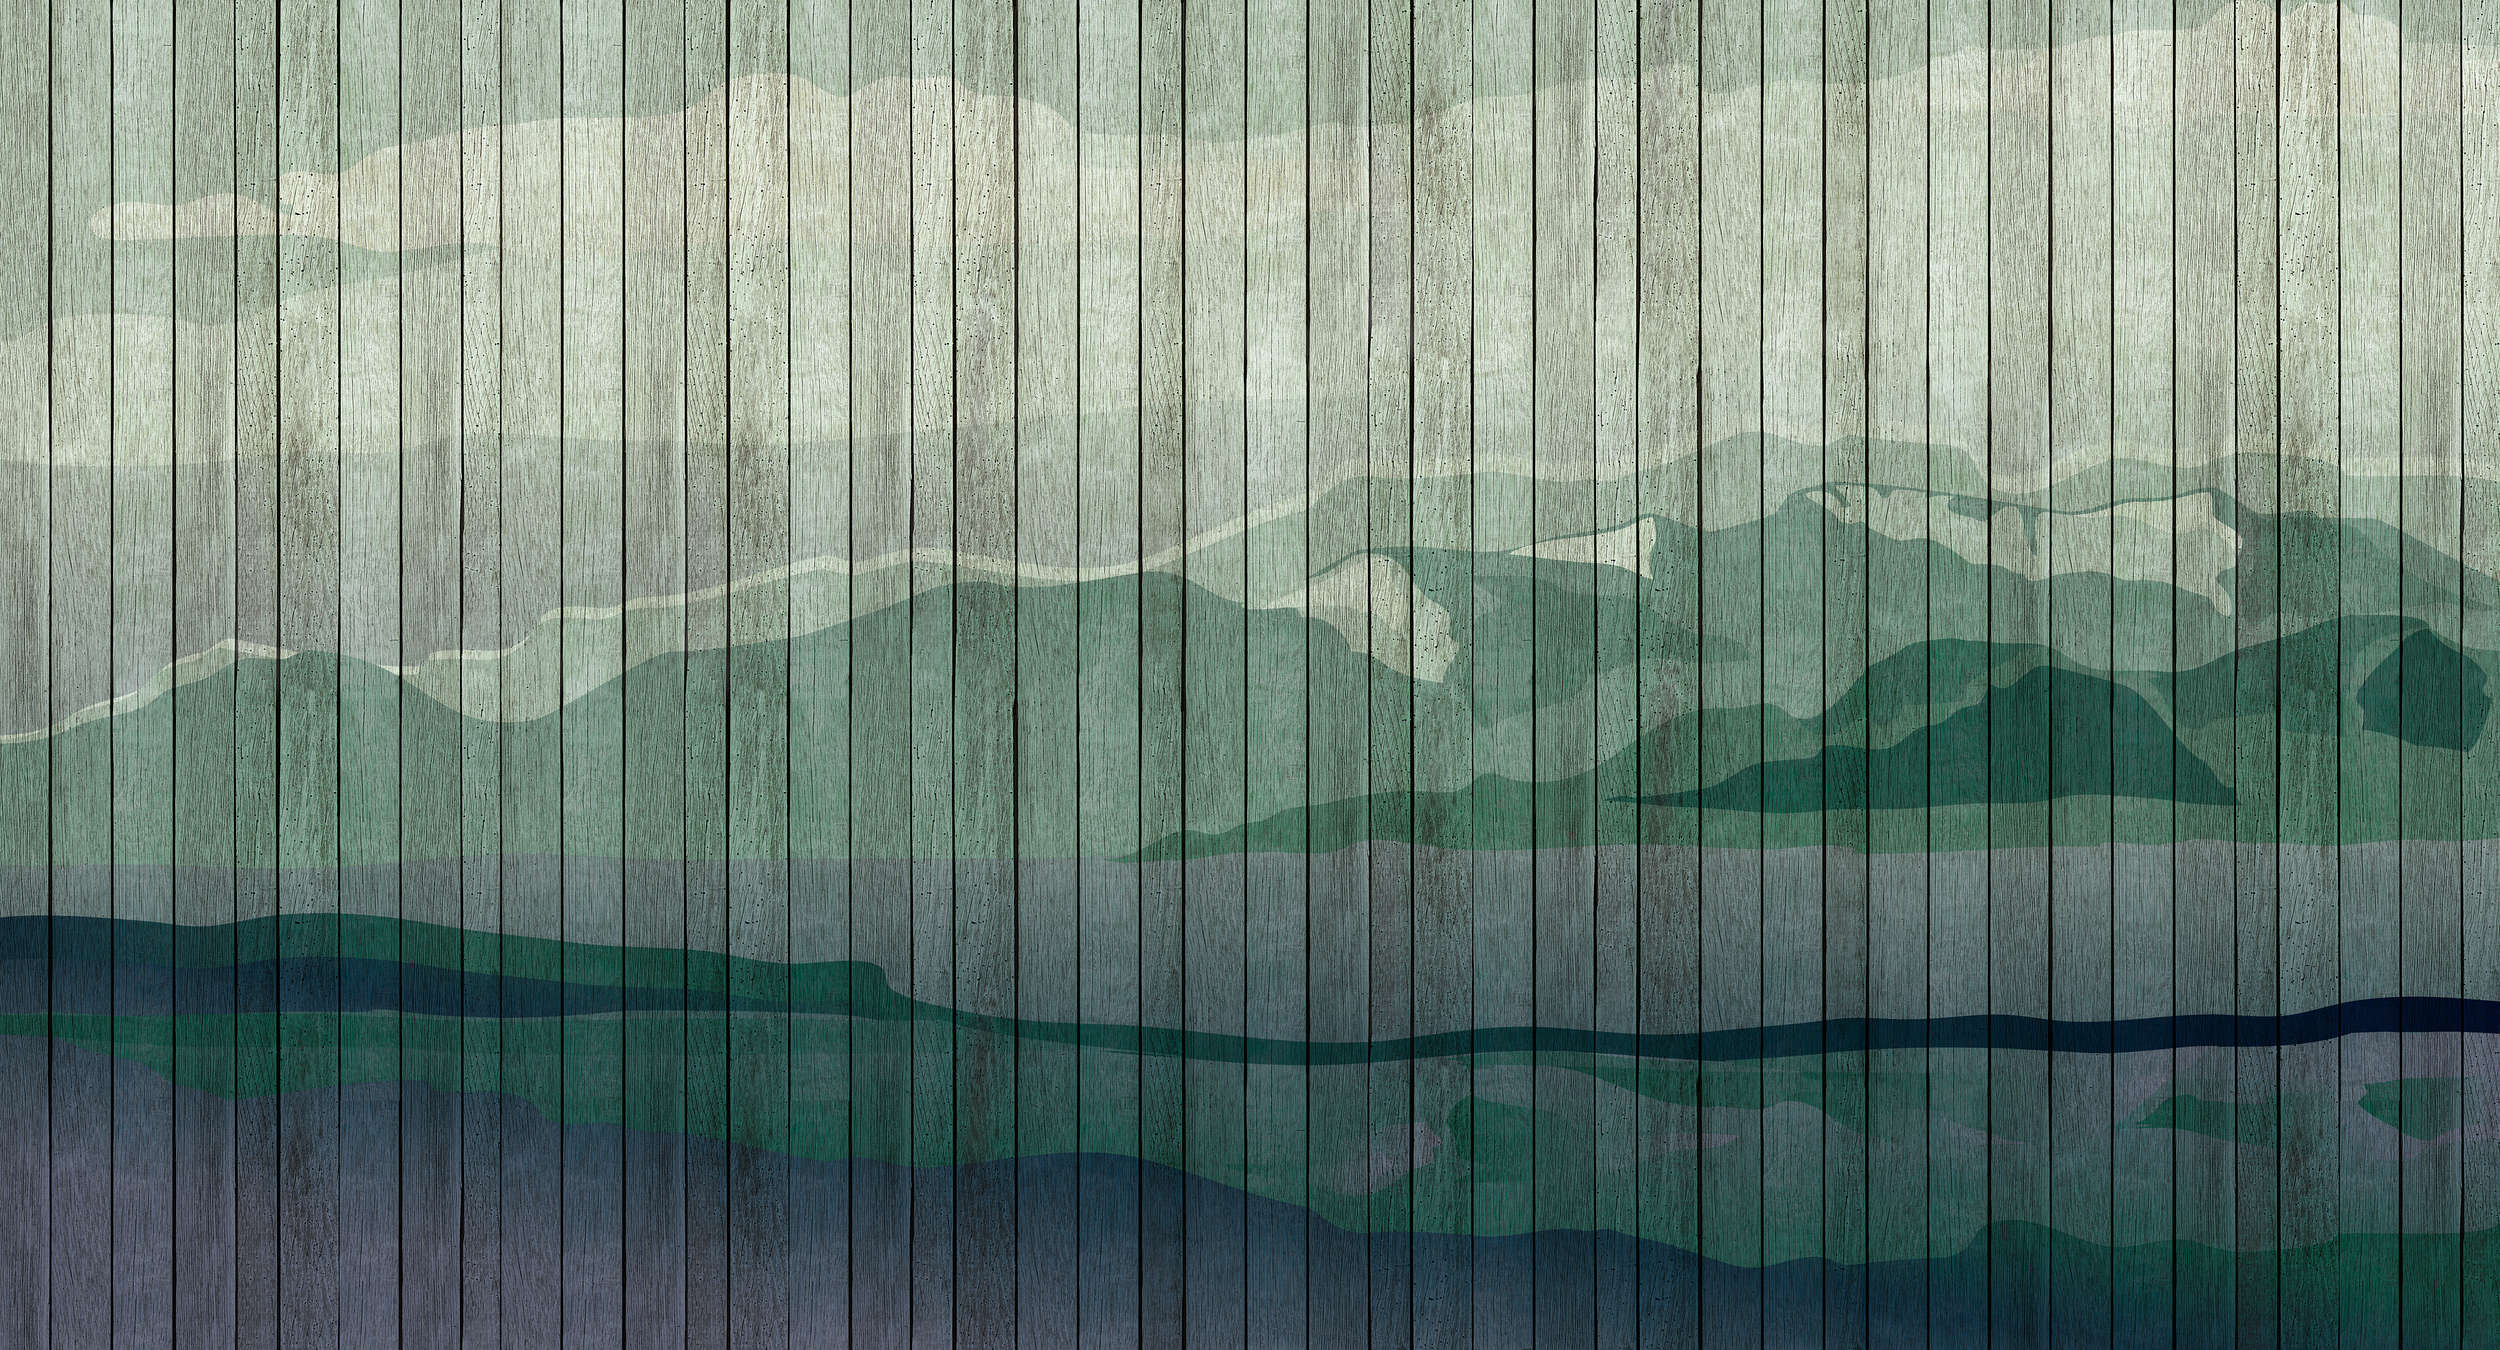             Mountains 3 - Modern Wallpaper Mountain Landscape & Board Optics - Blue, Green | Premium Smooth Non-woven
        